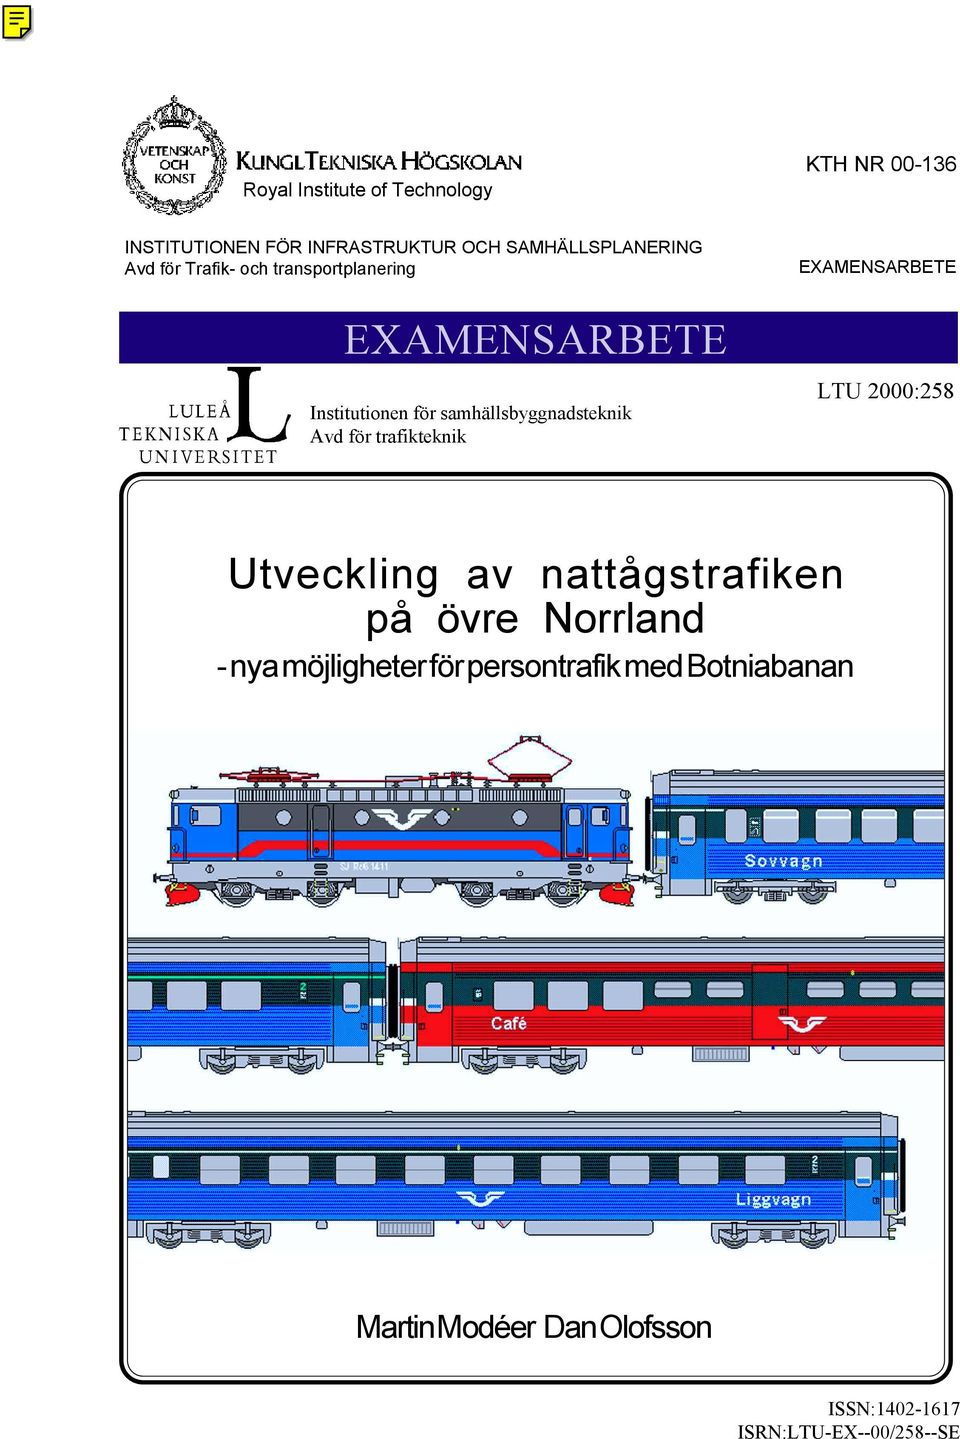 trafikteknik EXAMENSARBETE LTU 2000:258 Utveckling av nattågstrafiken på övre Norrland - nya